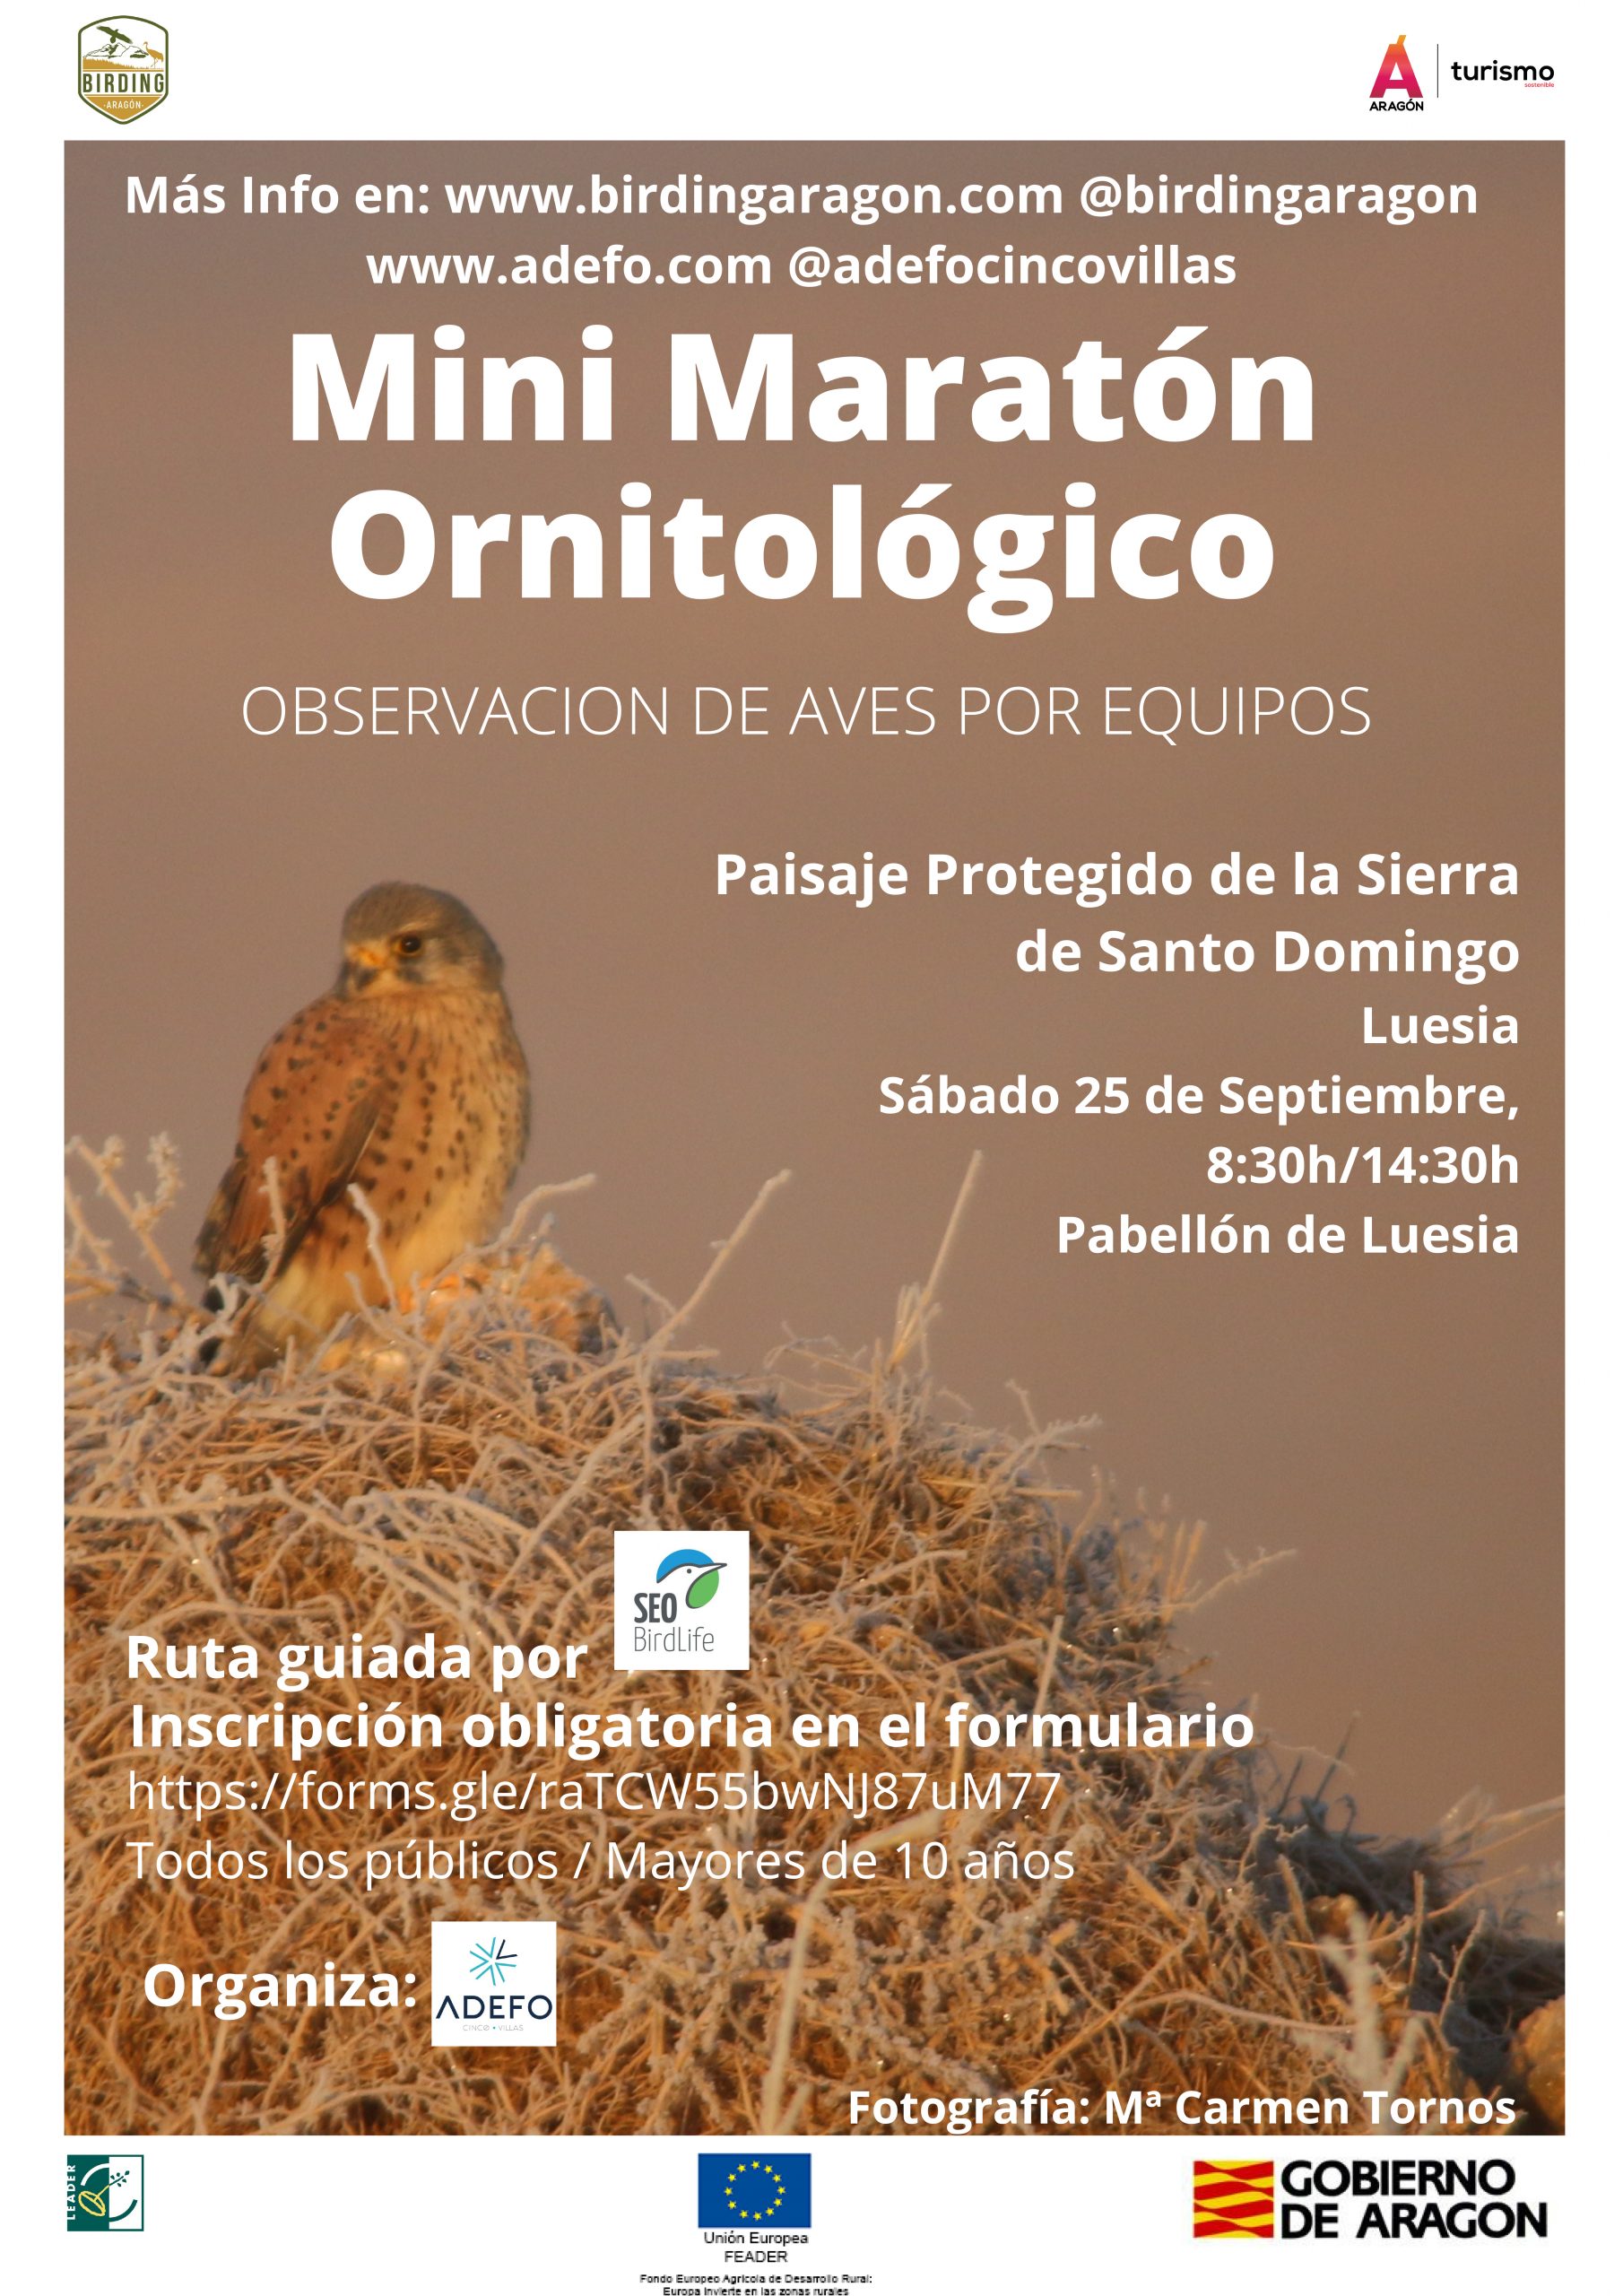 Mini maratón ornitológico de Birding Aragón en Luesia